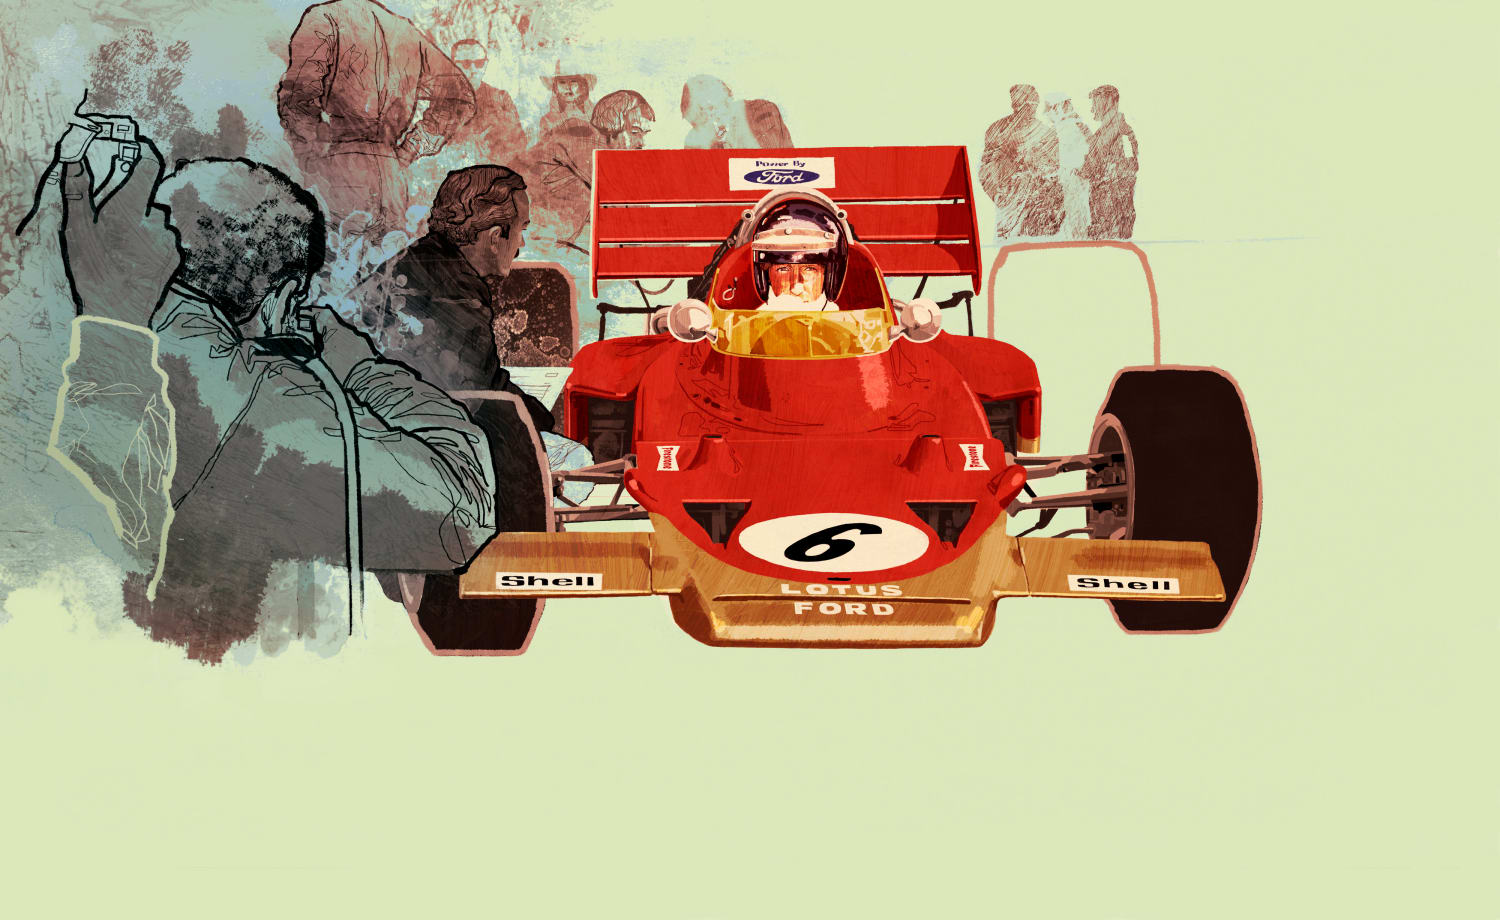 Jochen Rindt  alte original Formel 1 Postkarte 70er Jahre